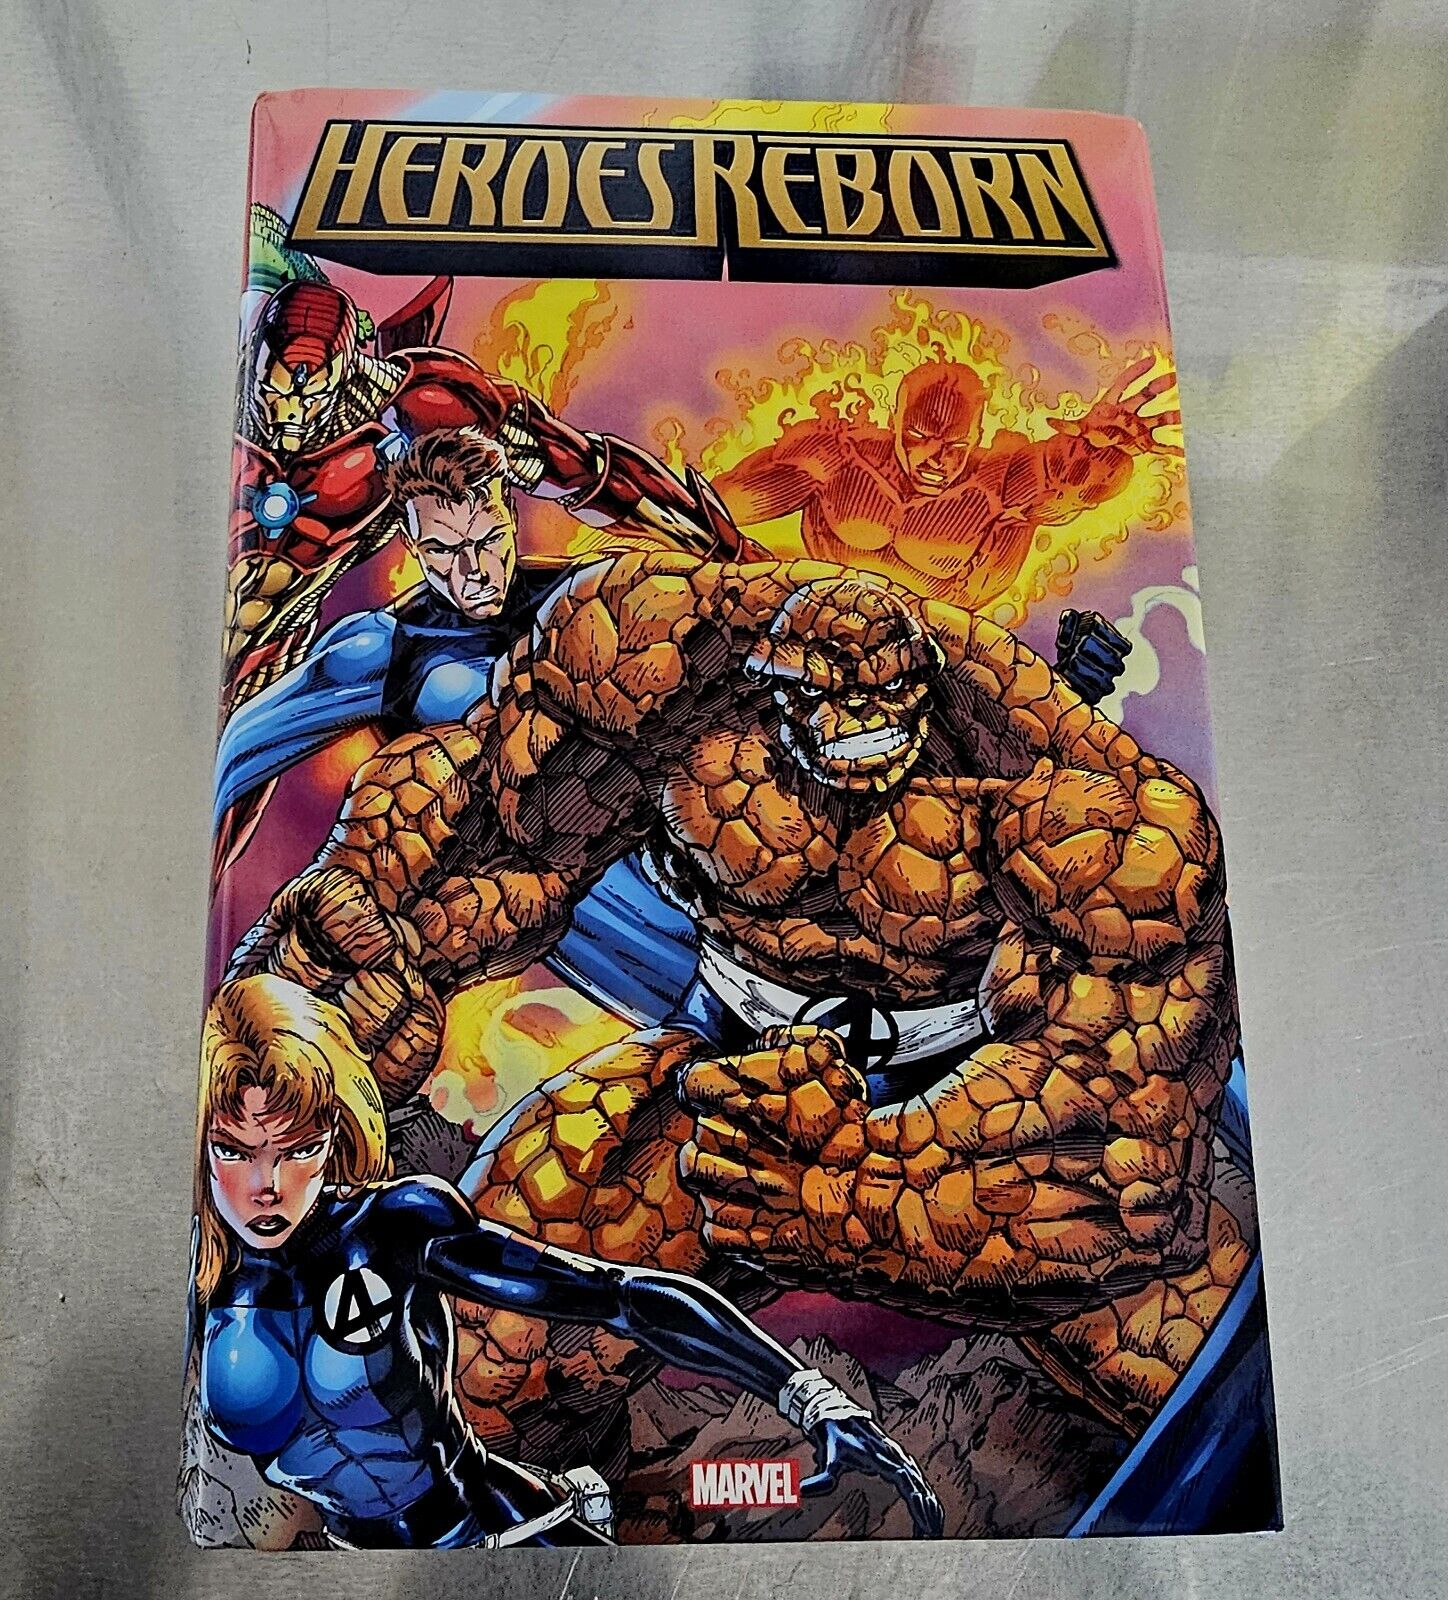 HEROES REBORN OMNIBUS HARDCOVER (Marvel, 2021)